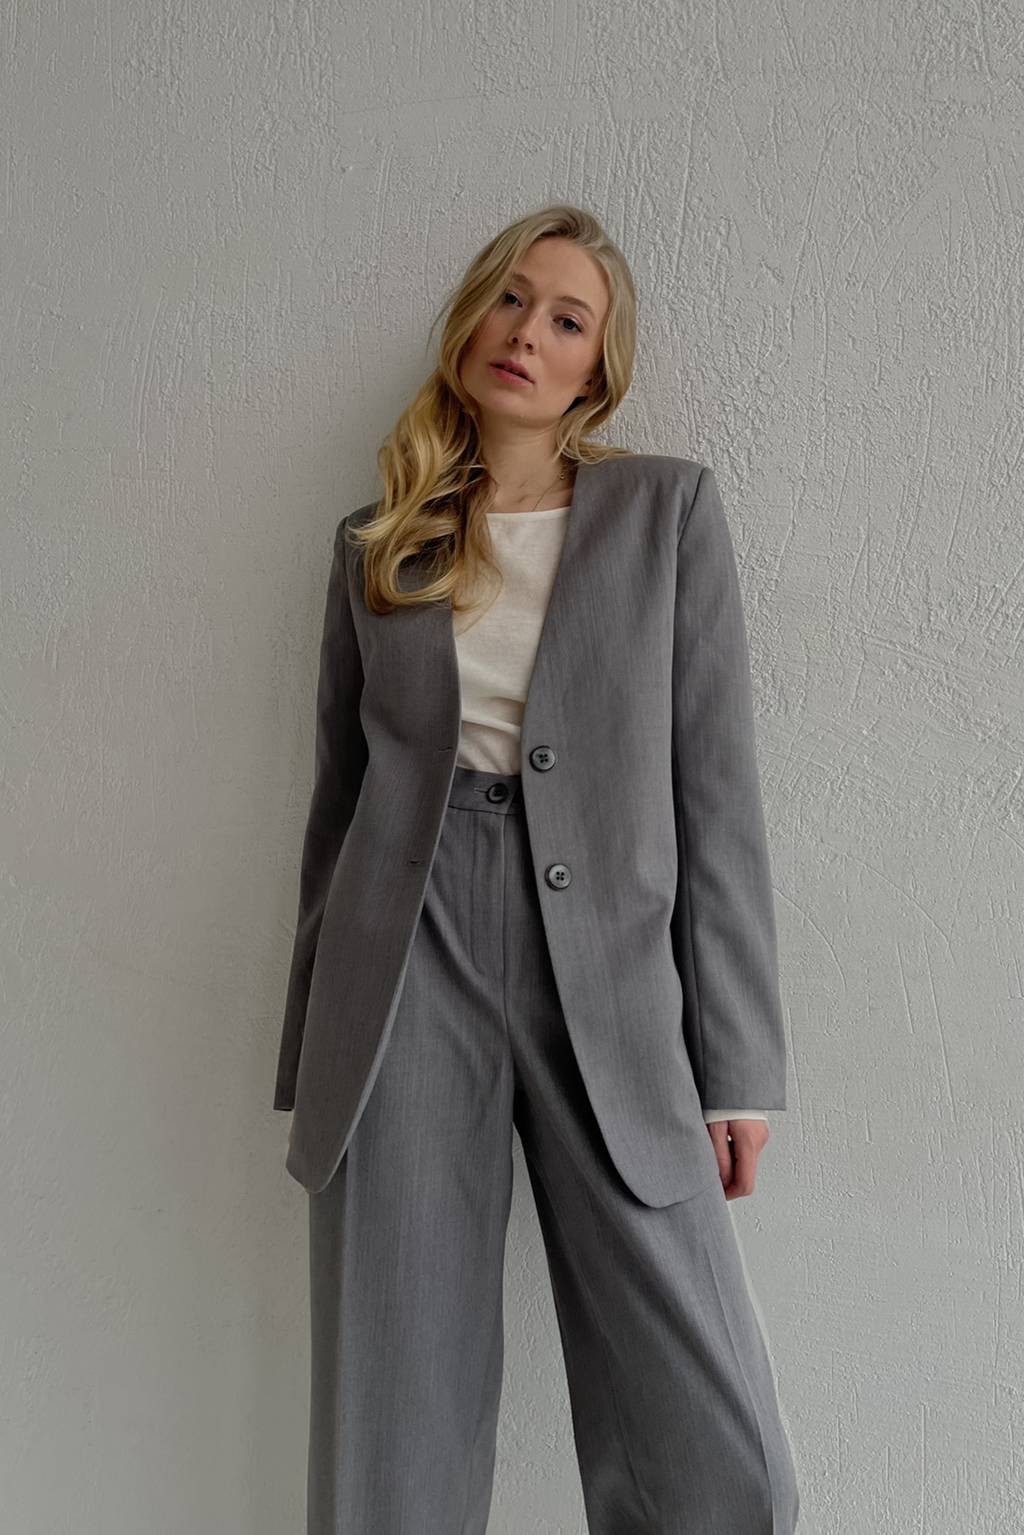 Saleonsale 0921 element. Reiko фирма жакет серый. Женский пиджак серого цвета. Ushatava серый пиджак. Пиджак серый женский House.